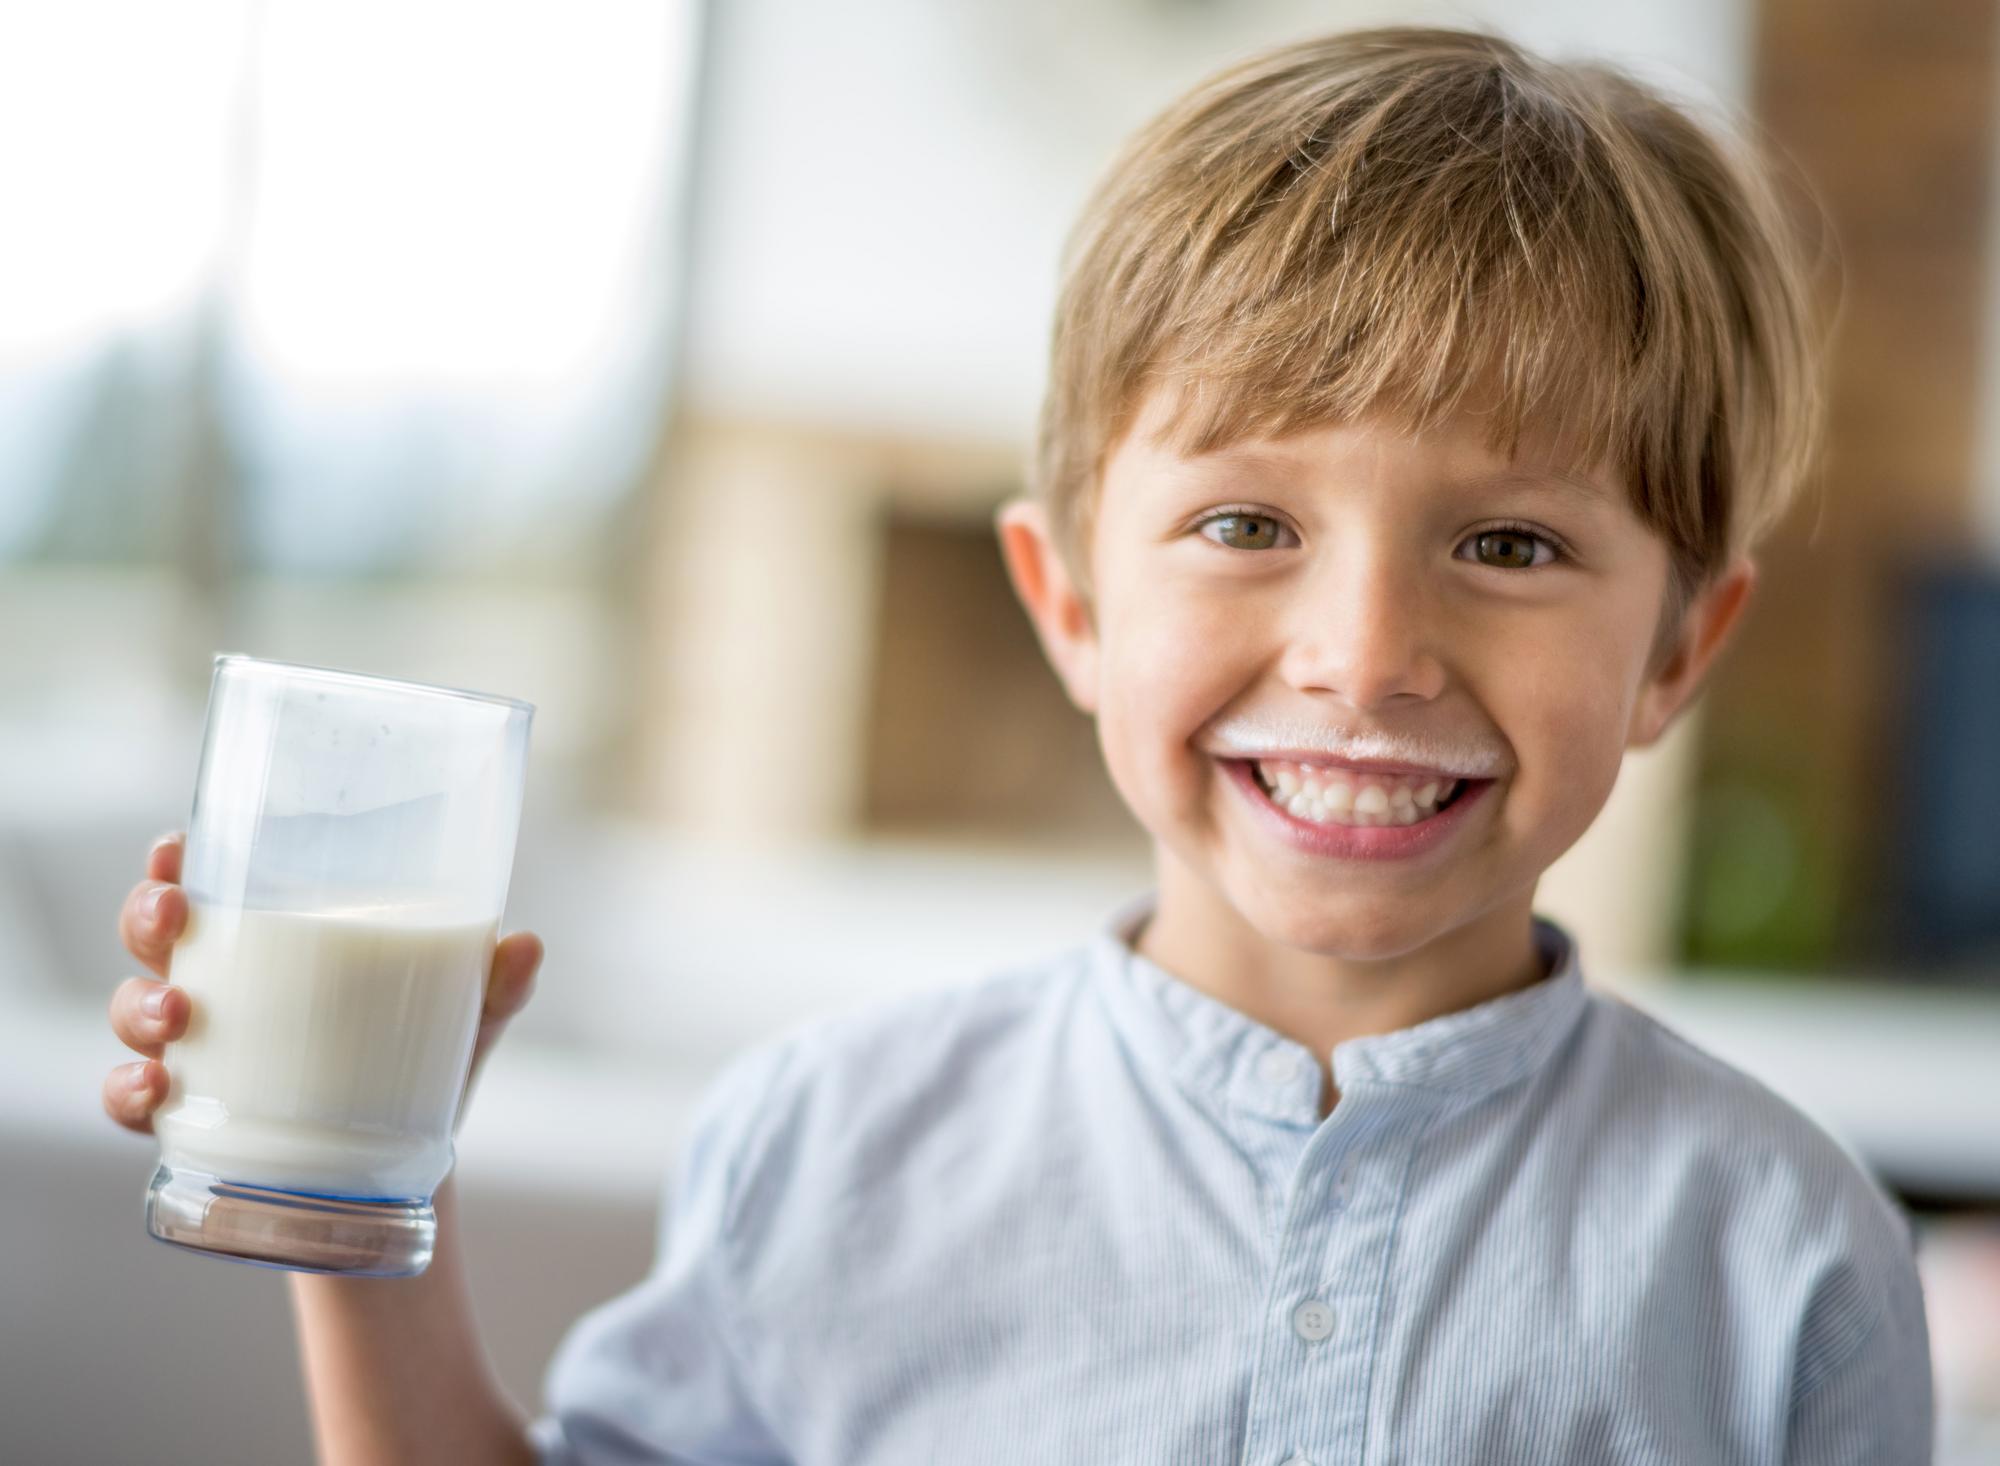 Plnotučné mlieko a obezita aj u detí? Aká je pravda? | Najmama.sk